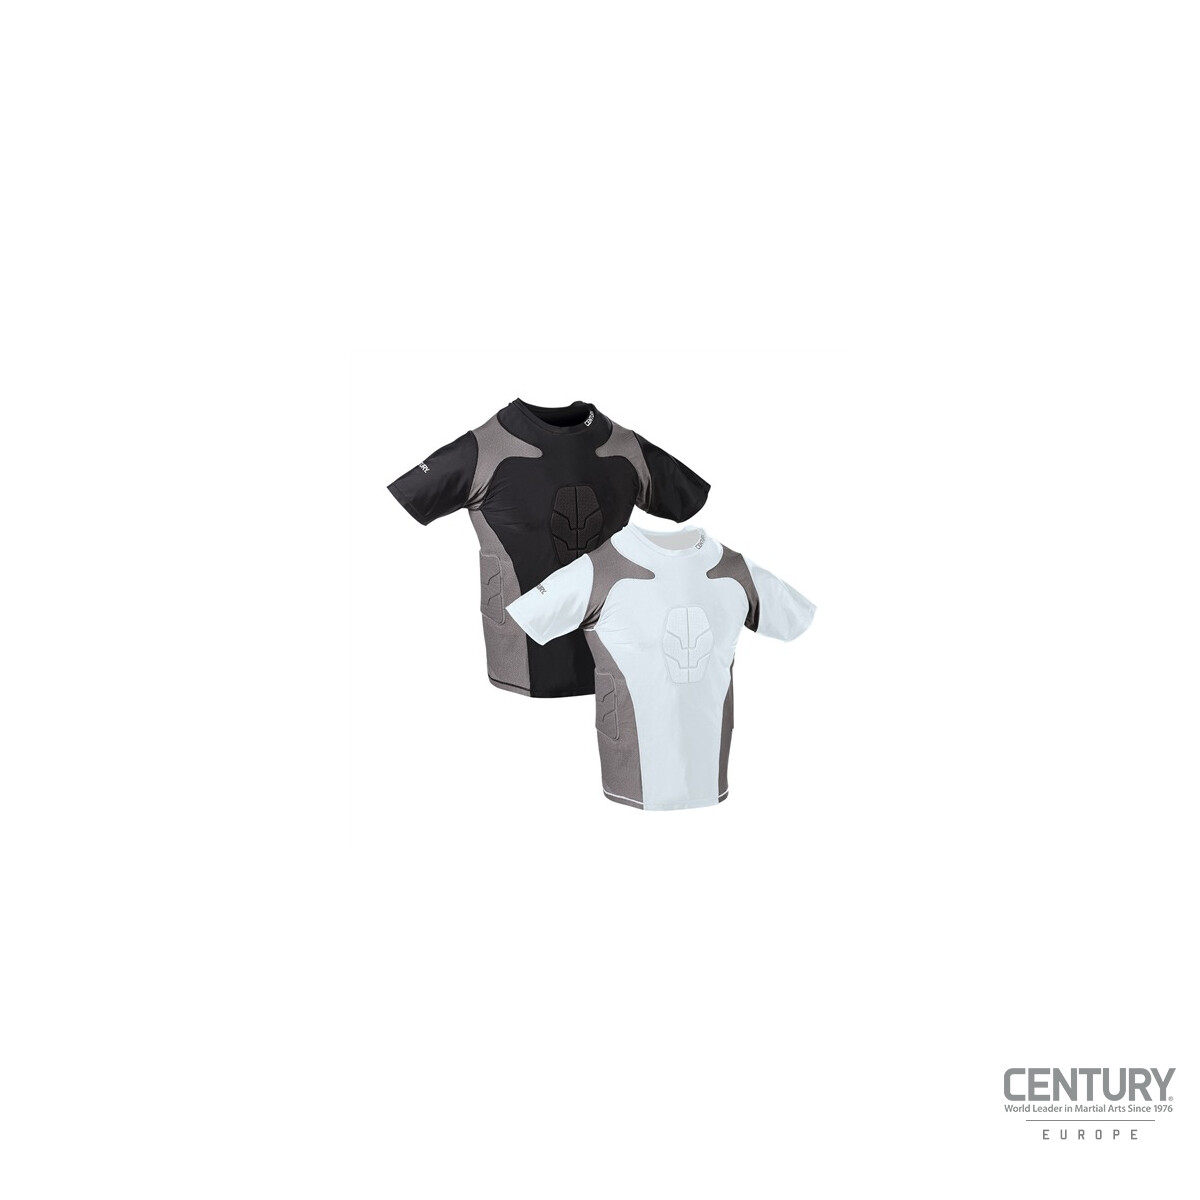 Century Short Sleeve Padded Compression Shirt Black Extra Large New 